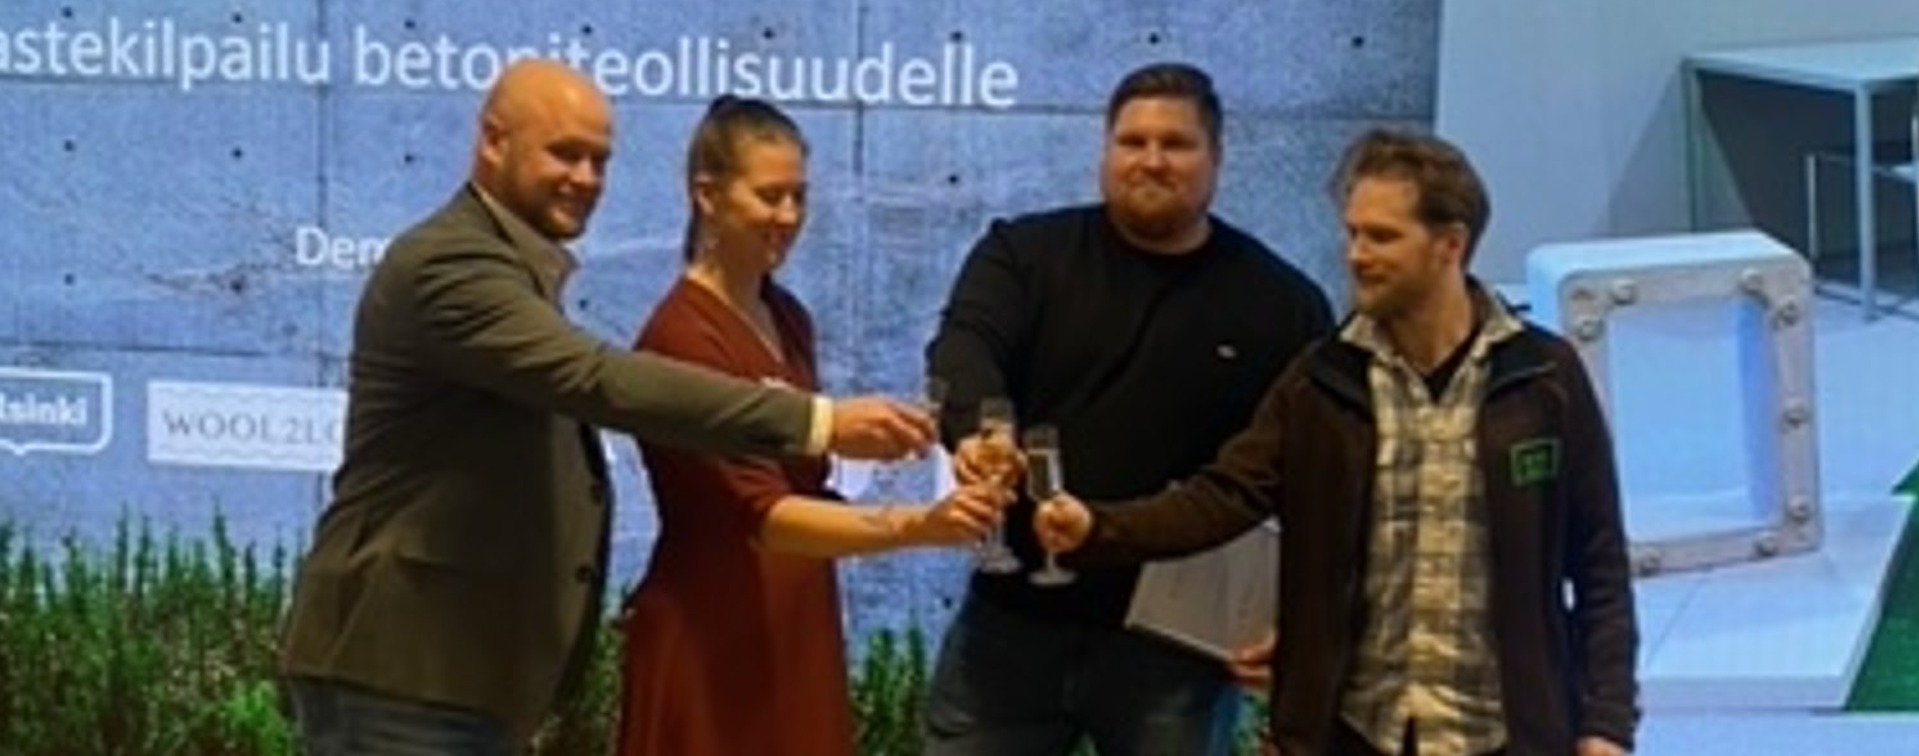 Swerock voitti Helsingin kaupungin järjestämän innovaatiohaasteen